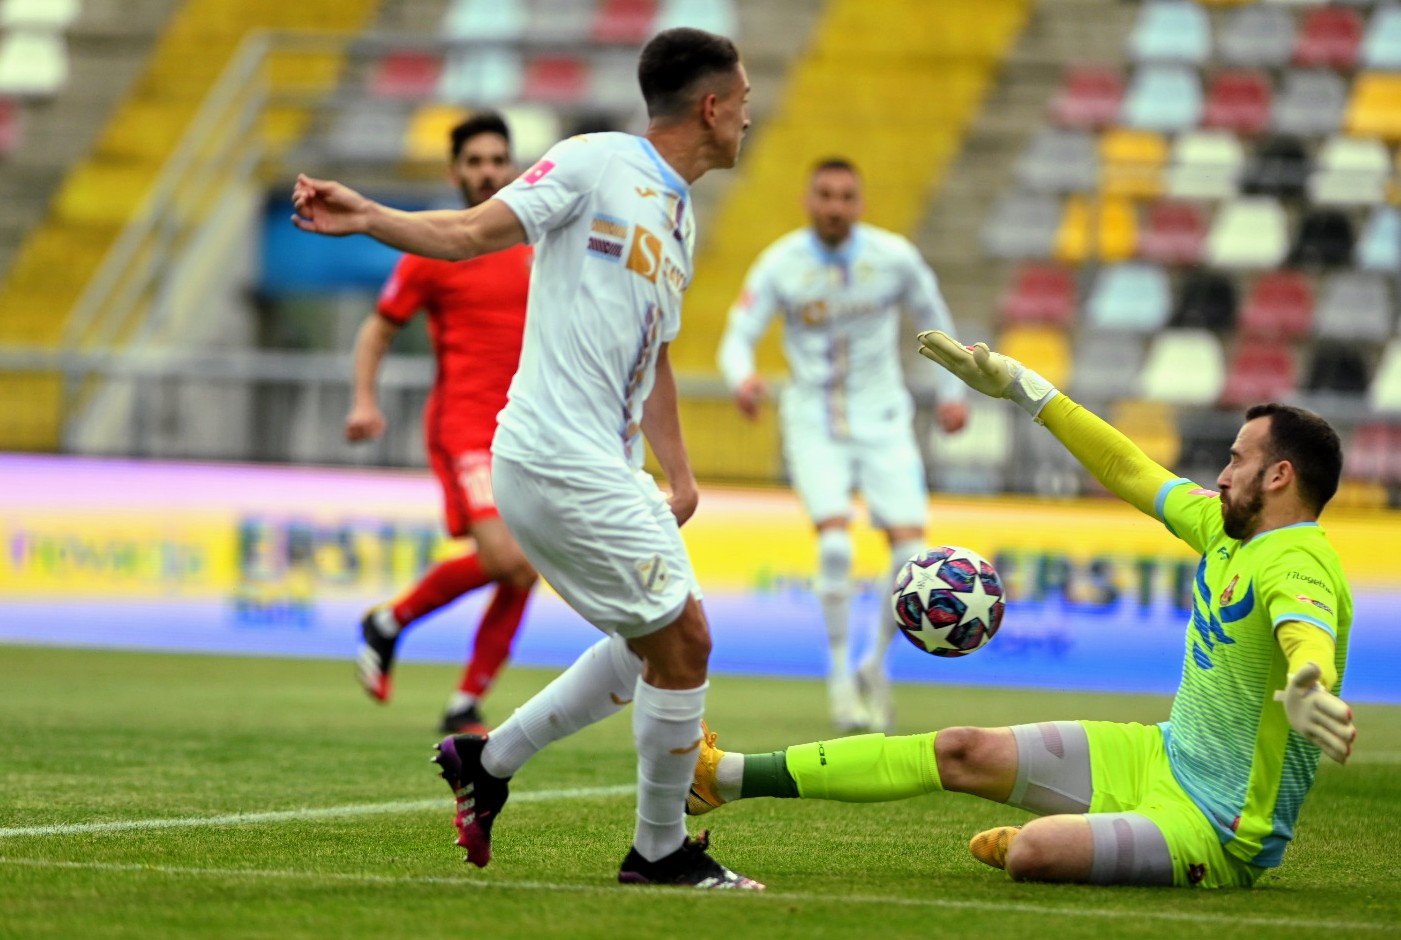 Rijeka - Gorica 2:0 - sažetak, 1. kolo (2021./2022.) 